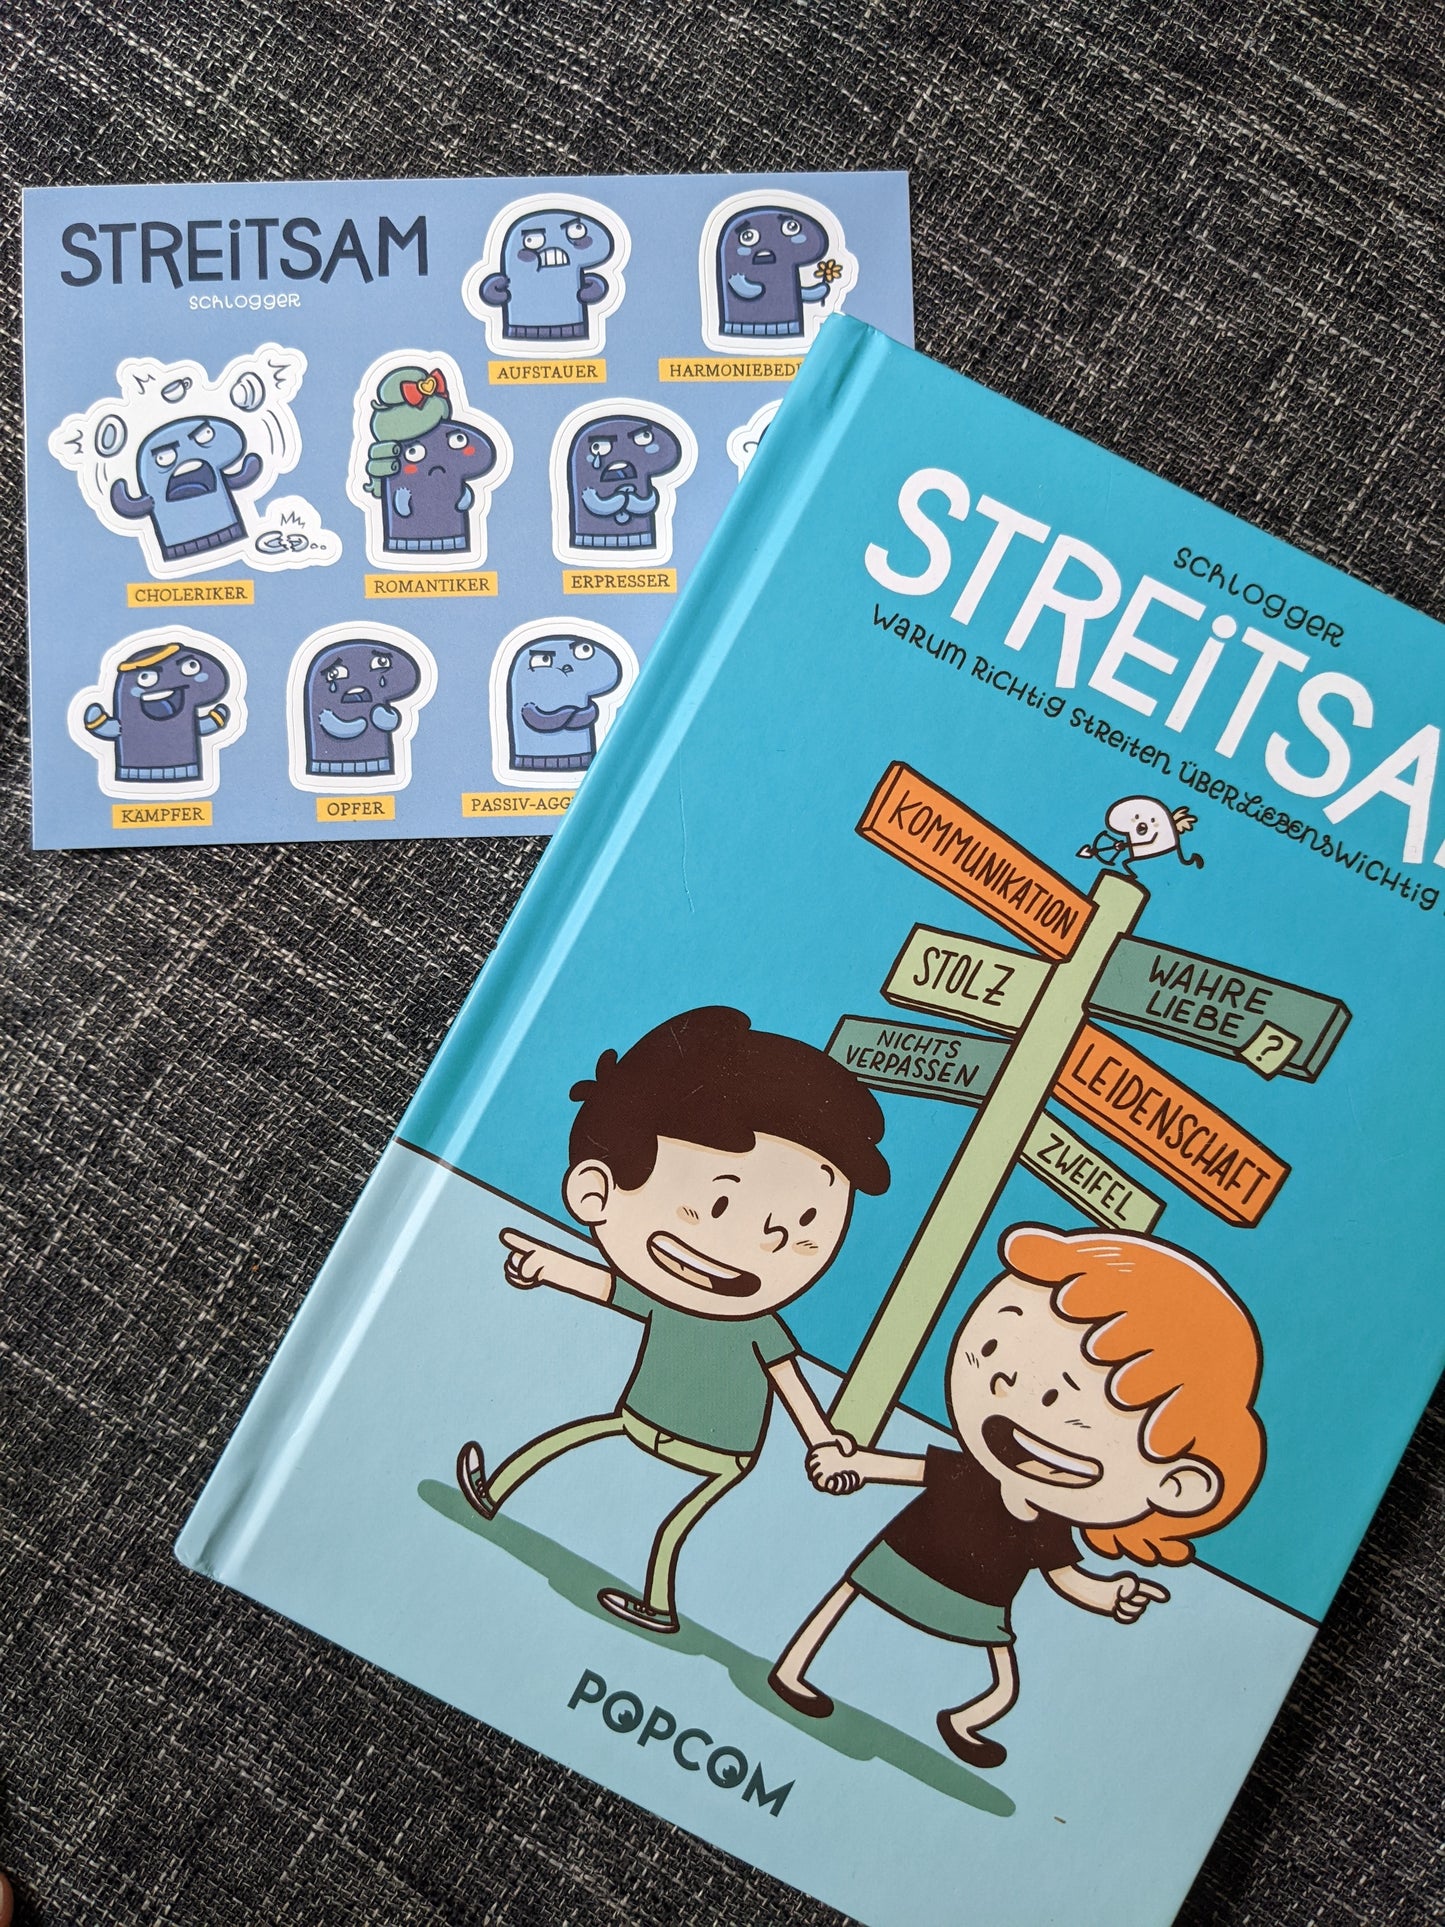 Buch "Streitsam - Besser Streiten" + Stickerbogen